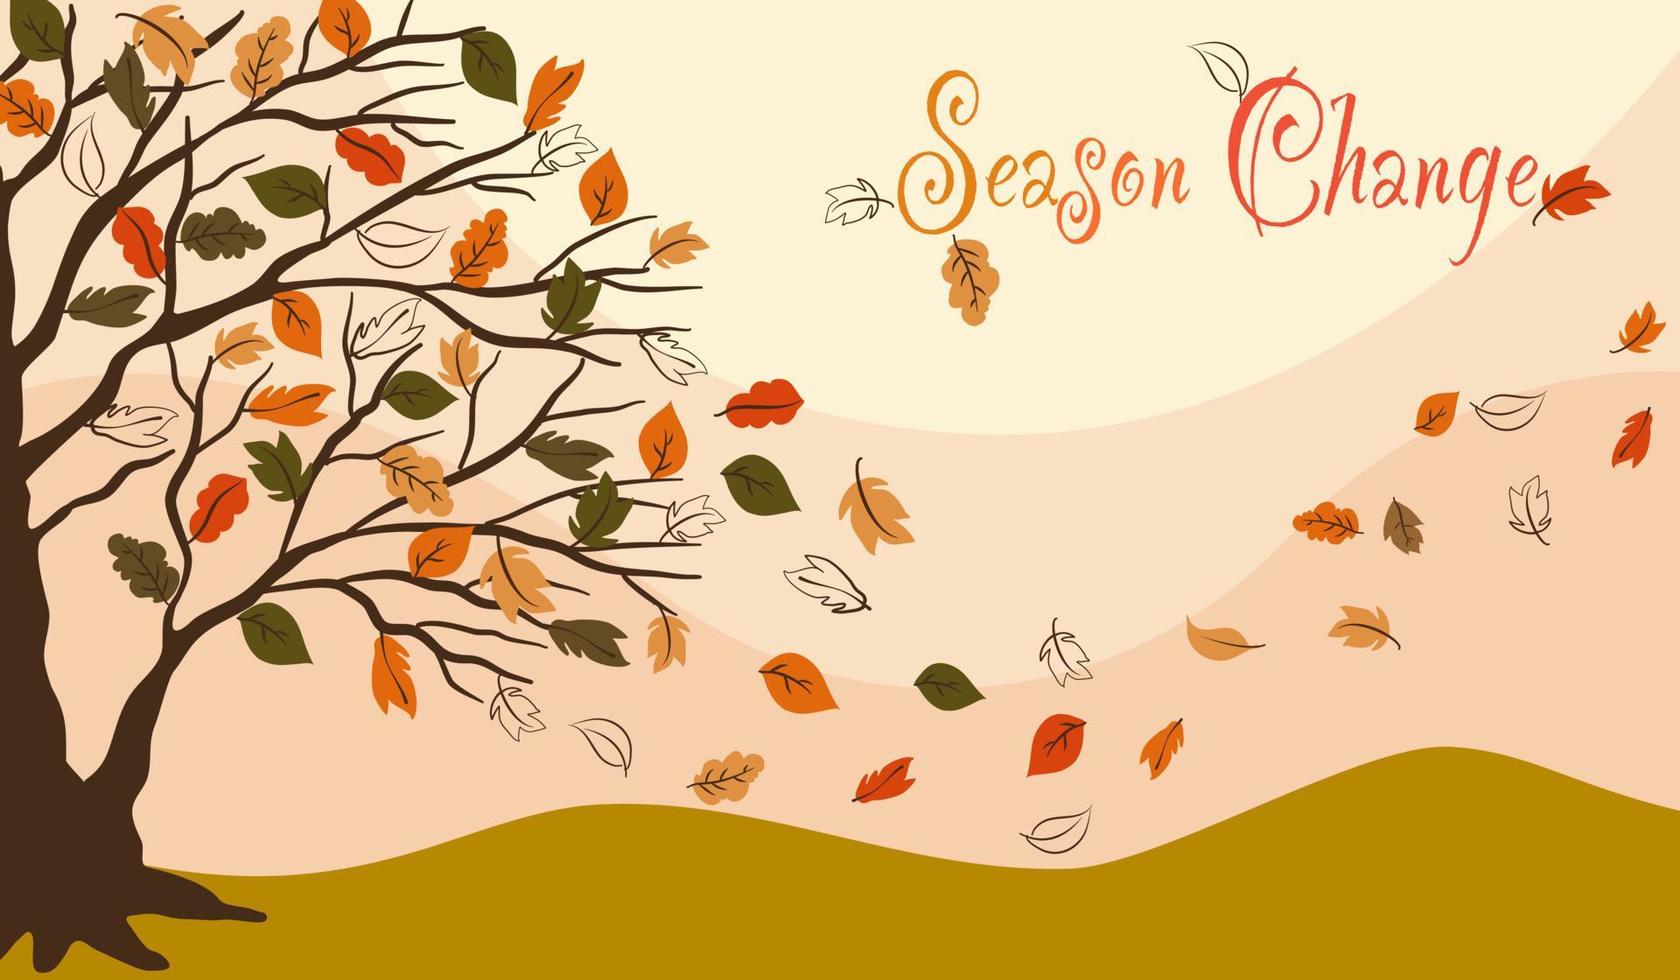 Vektor von grün gelb orange gefallenen Blättern auf braunem Baum Herbstsaison, fliegende Blätter Konstruktionszeichnung mit Jahreszeitenwechseltexten auf pastellgelbem Hintergrund